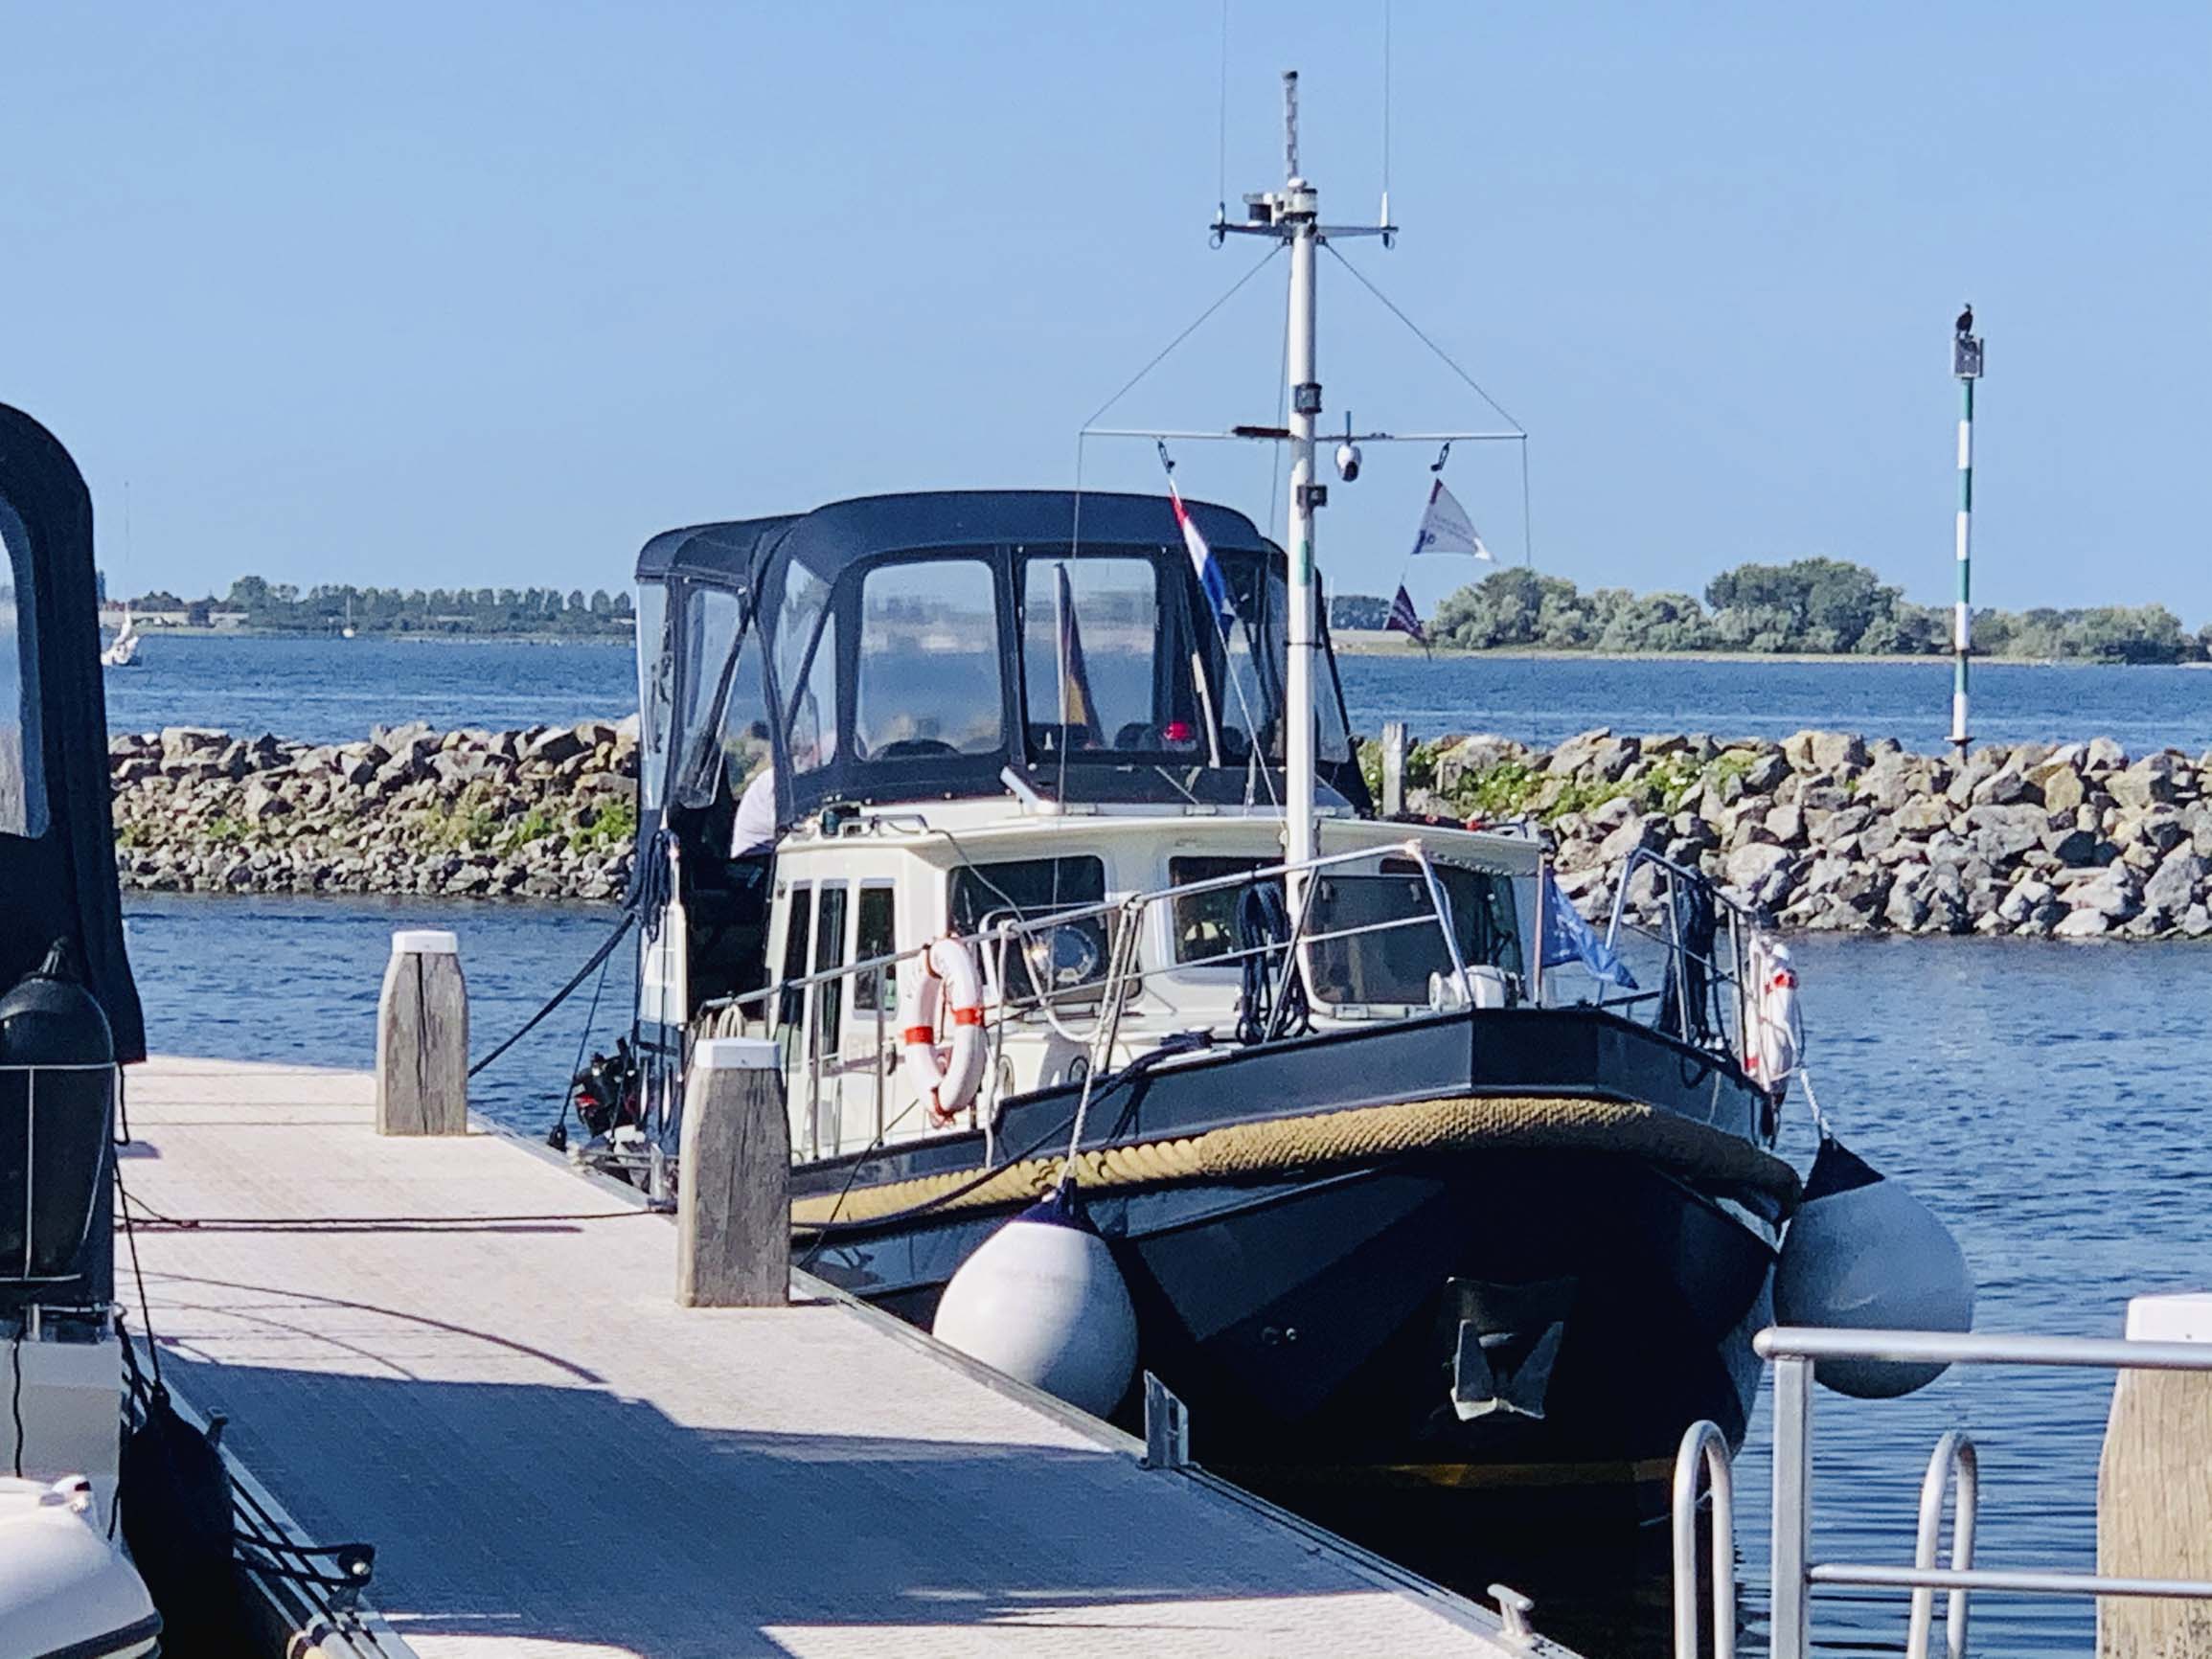 Vita Nova - Summer cruise on the Grevelingenmeer